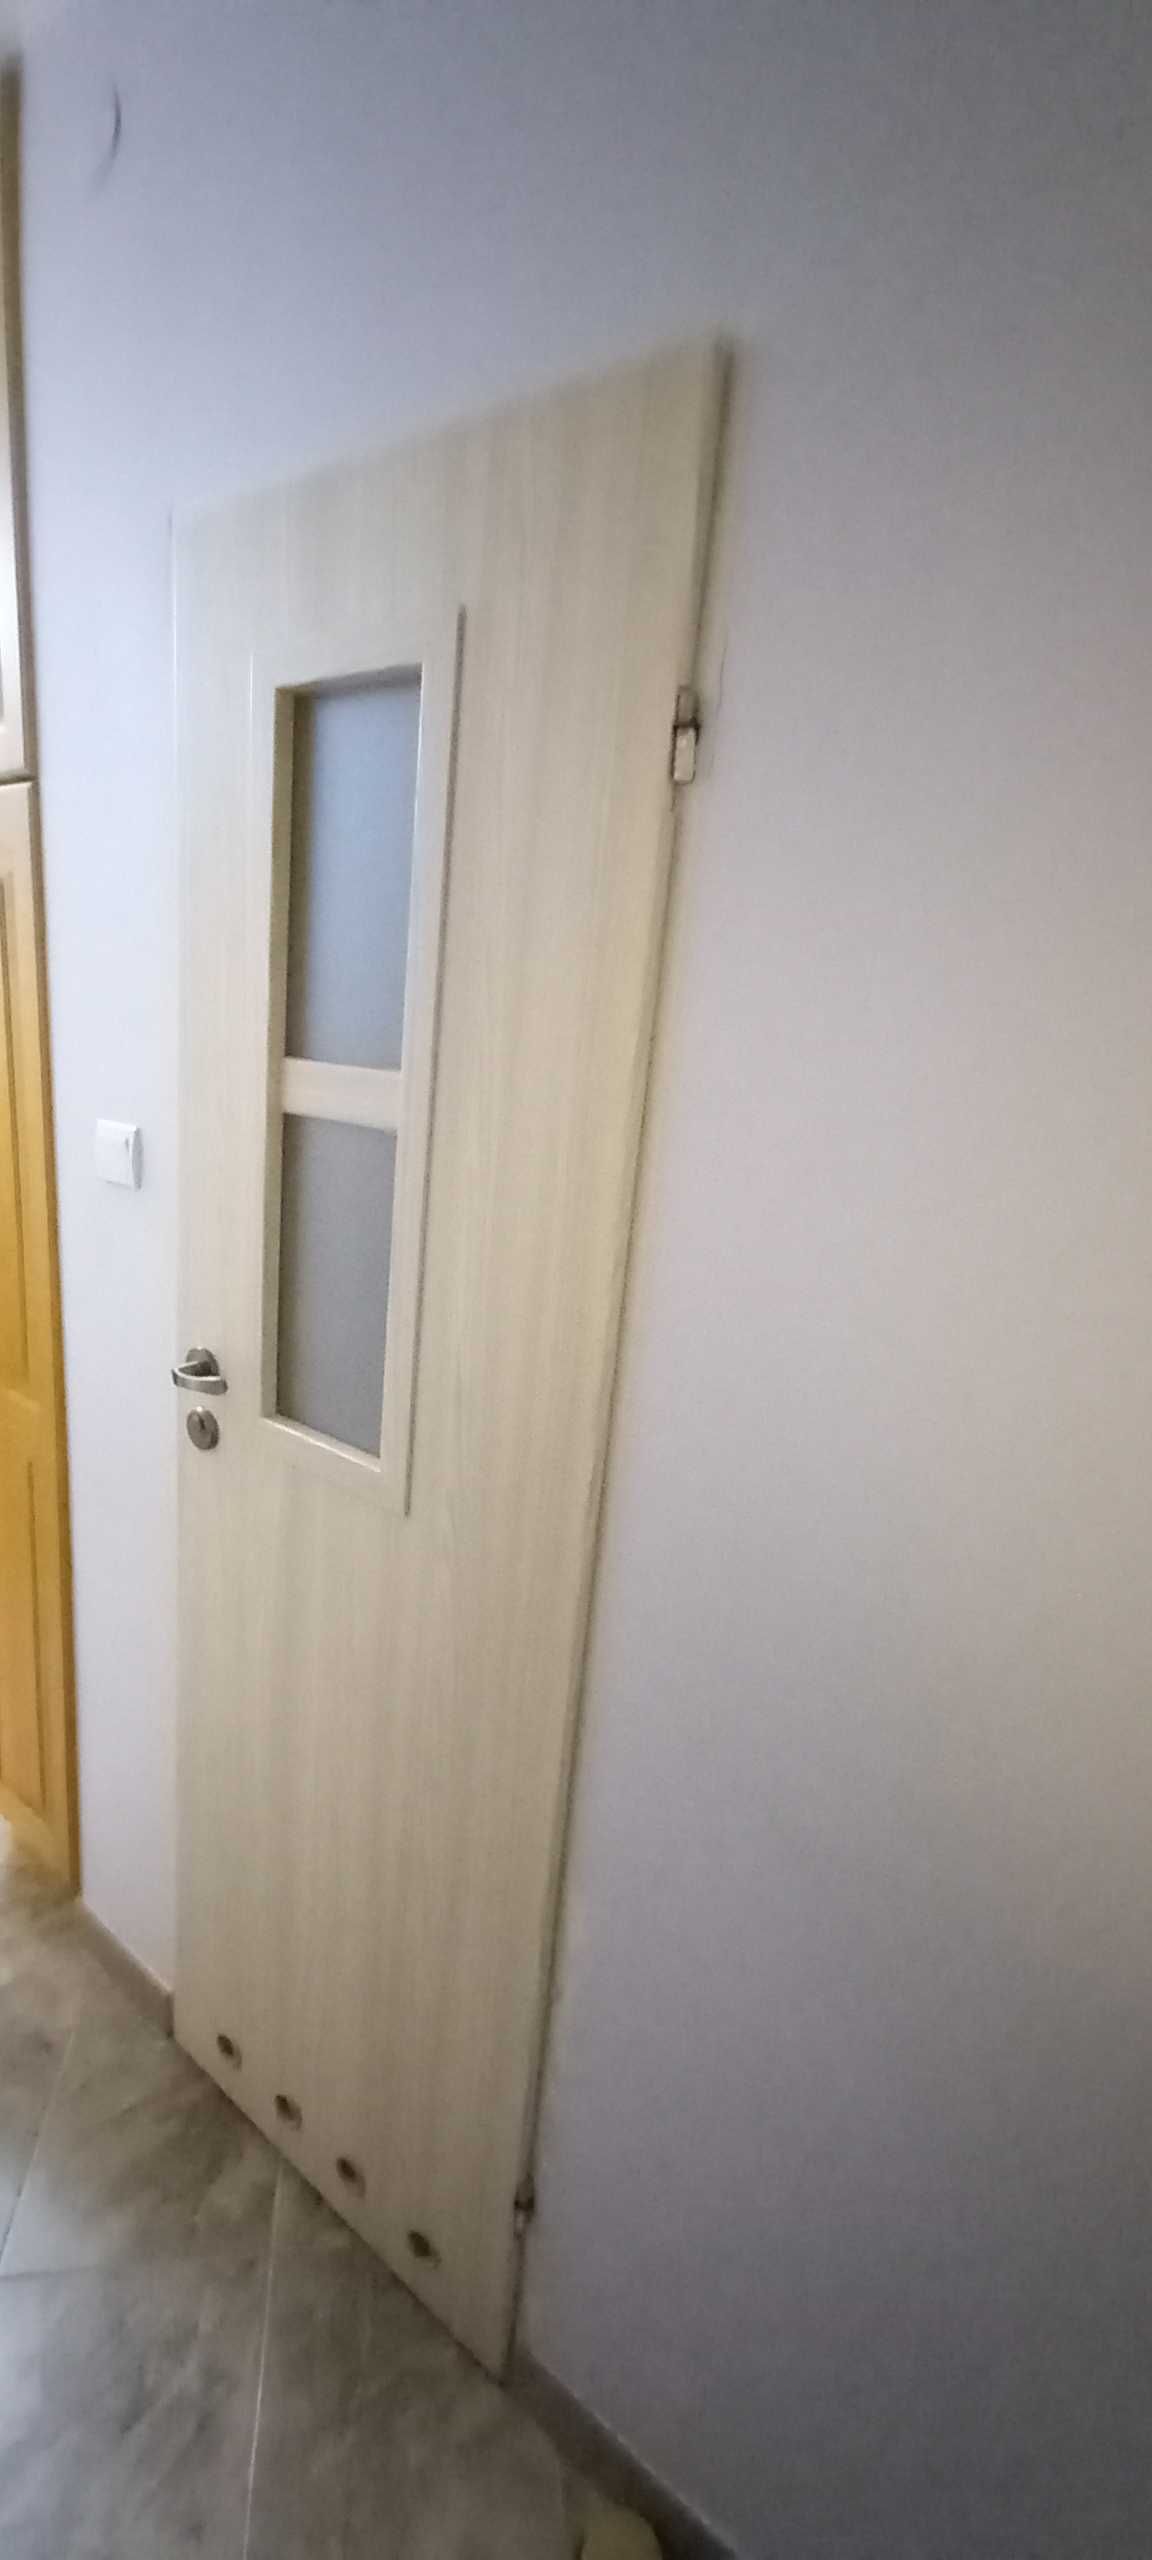 Drzwi do wnętrza mieszkania -6 sztuk